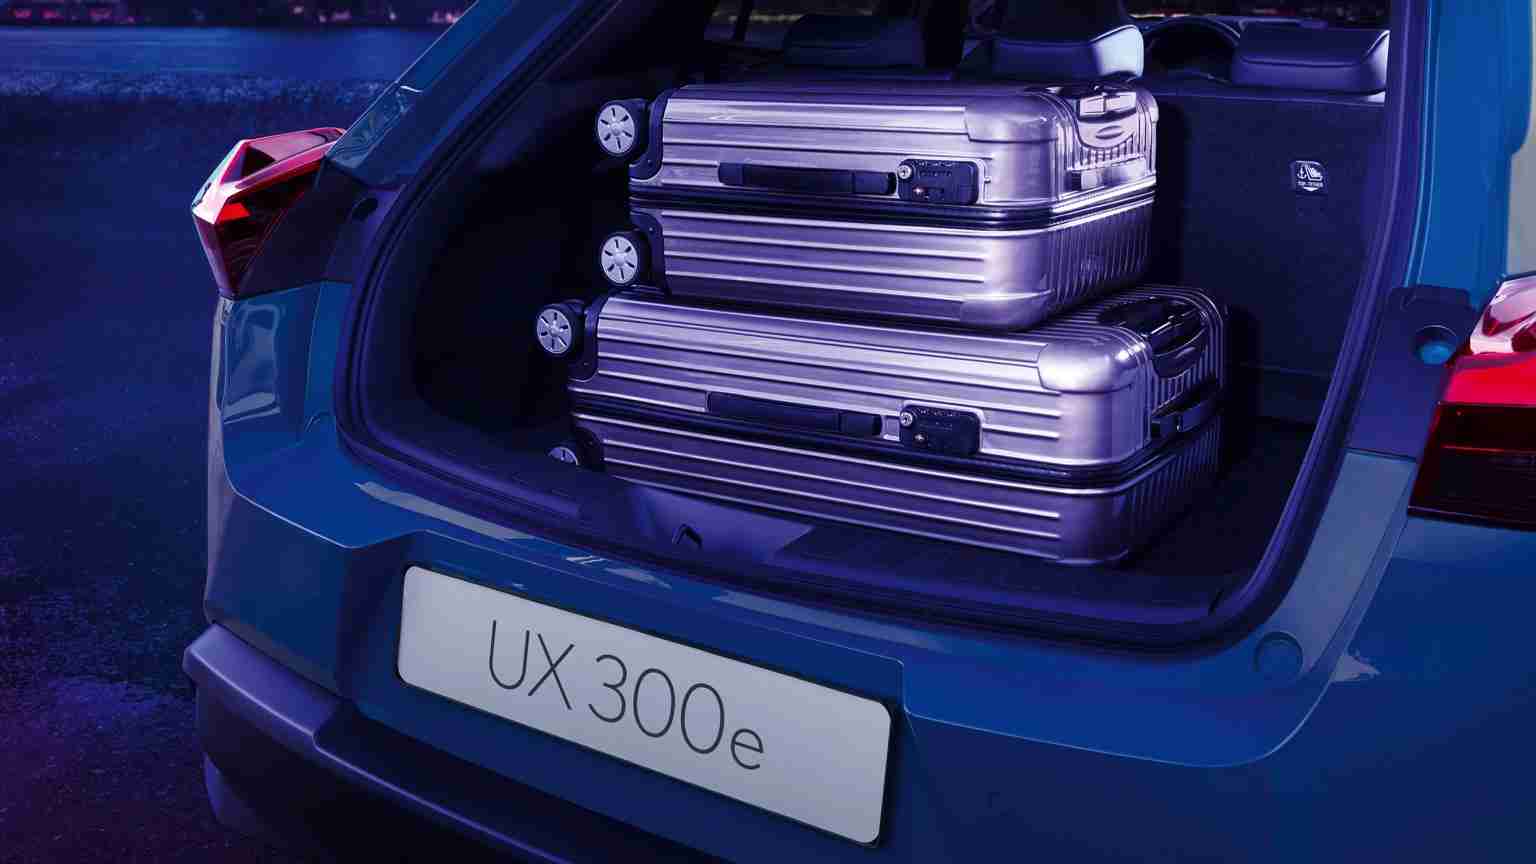 Lexus UX 300e Sales